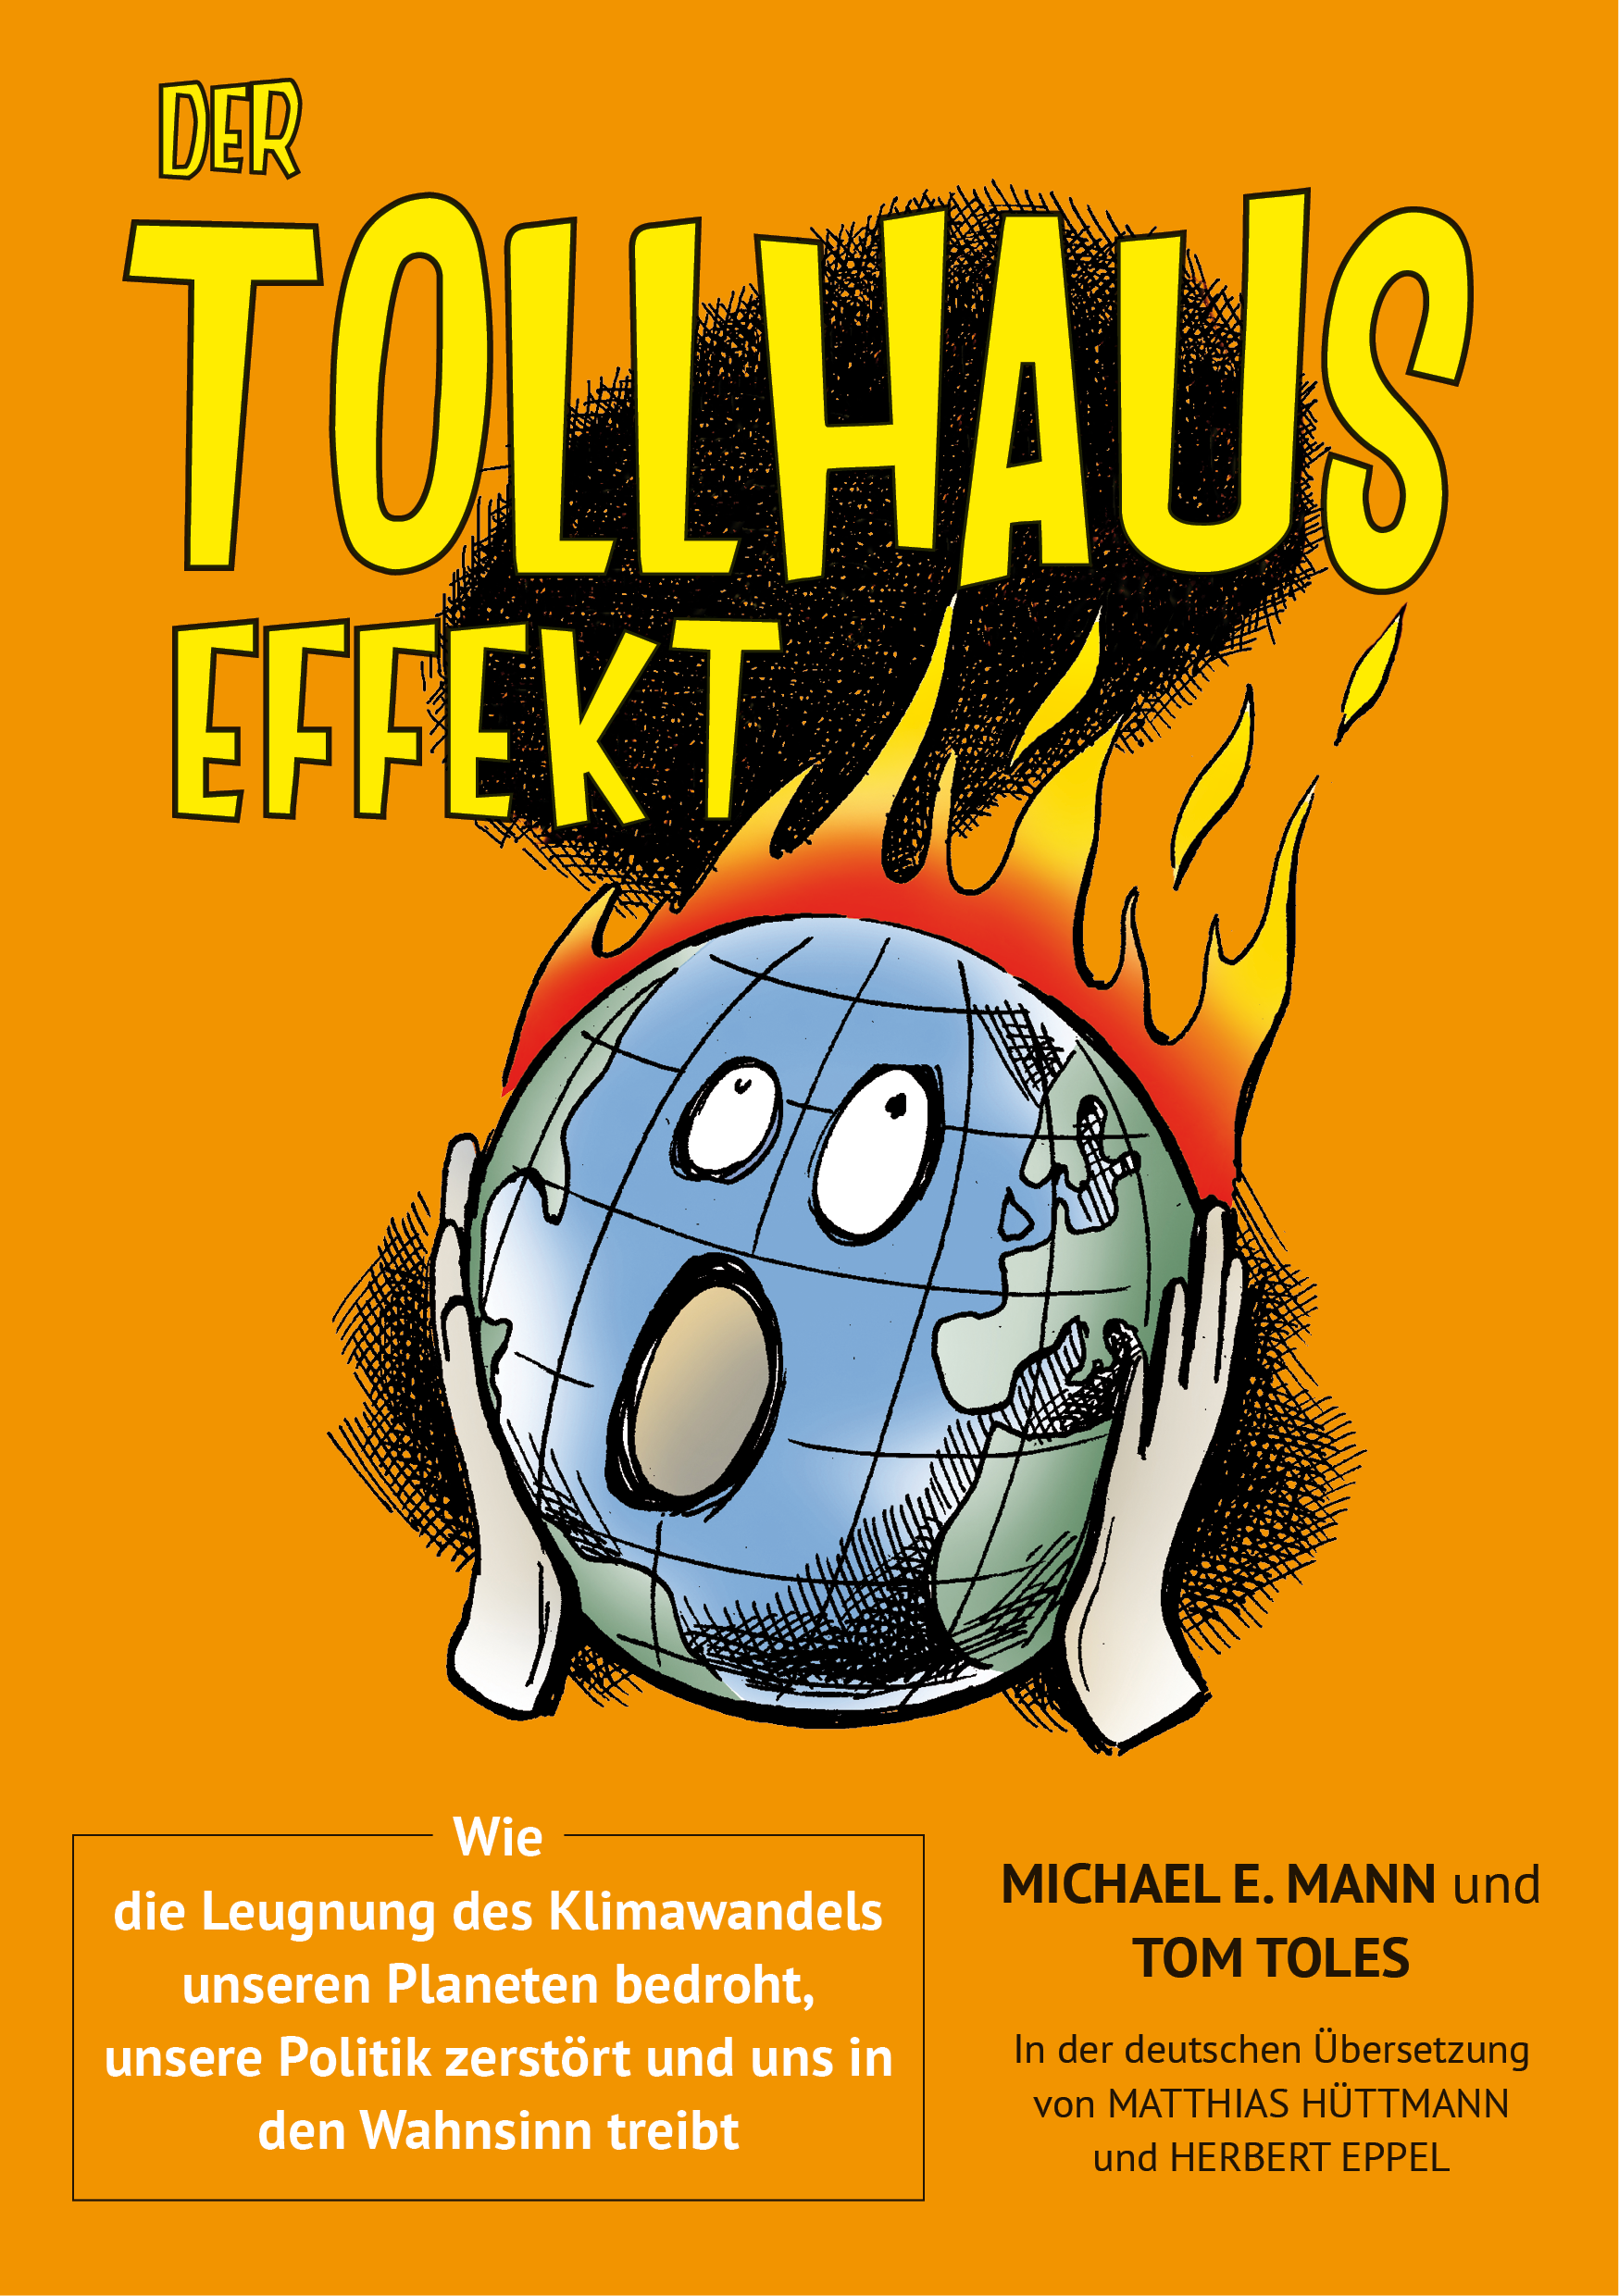 Der Tollhauseffekt<br>
Wie die Leugnung des Klimawandels unseren Planeten bedroht, unsere Politik zerstört und uns in den Wahnsinn treibt<br><br>
Im Original: The Madhouse Effect (von Michael E. Mann und Tom Toles)<br>
In der deutschen Übersetzung von Matthias Hüttmann und Herbert Eppel<br>
Produziert von Matthias Hüttmann<br><br><br>
ISBN 978-3-933634-46-7, 2., durchgesehene Auflage 2018, 272 Seiten<br>
D: 24,90 €  (AT: 25,60 €, CH: 29,00 SFr)<br>
Herausgeber: DGS, Landesverband Franken e.V.<br>
Verlag Solare Zukunft, Erlangen<br><br>
Mit einem Vorwort von Stefan Rahmstorf<br><br>
Das gedruckte Buch ist leider vergriffen.<br>
Hier können Sie es als eBook <a href='https://www.oekom.de/buch/der-tollhauseffekt-15532'>direkt</a> online bestellen.<br>